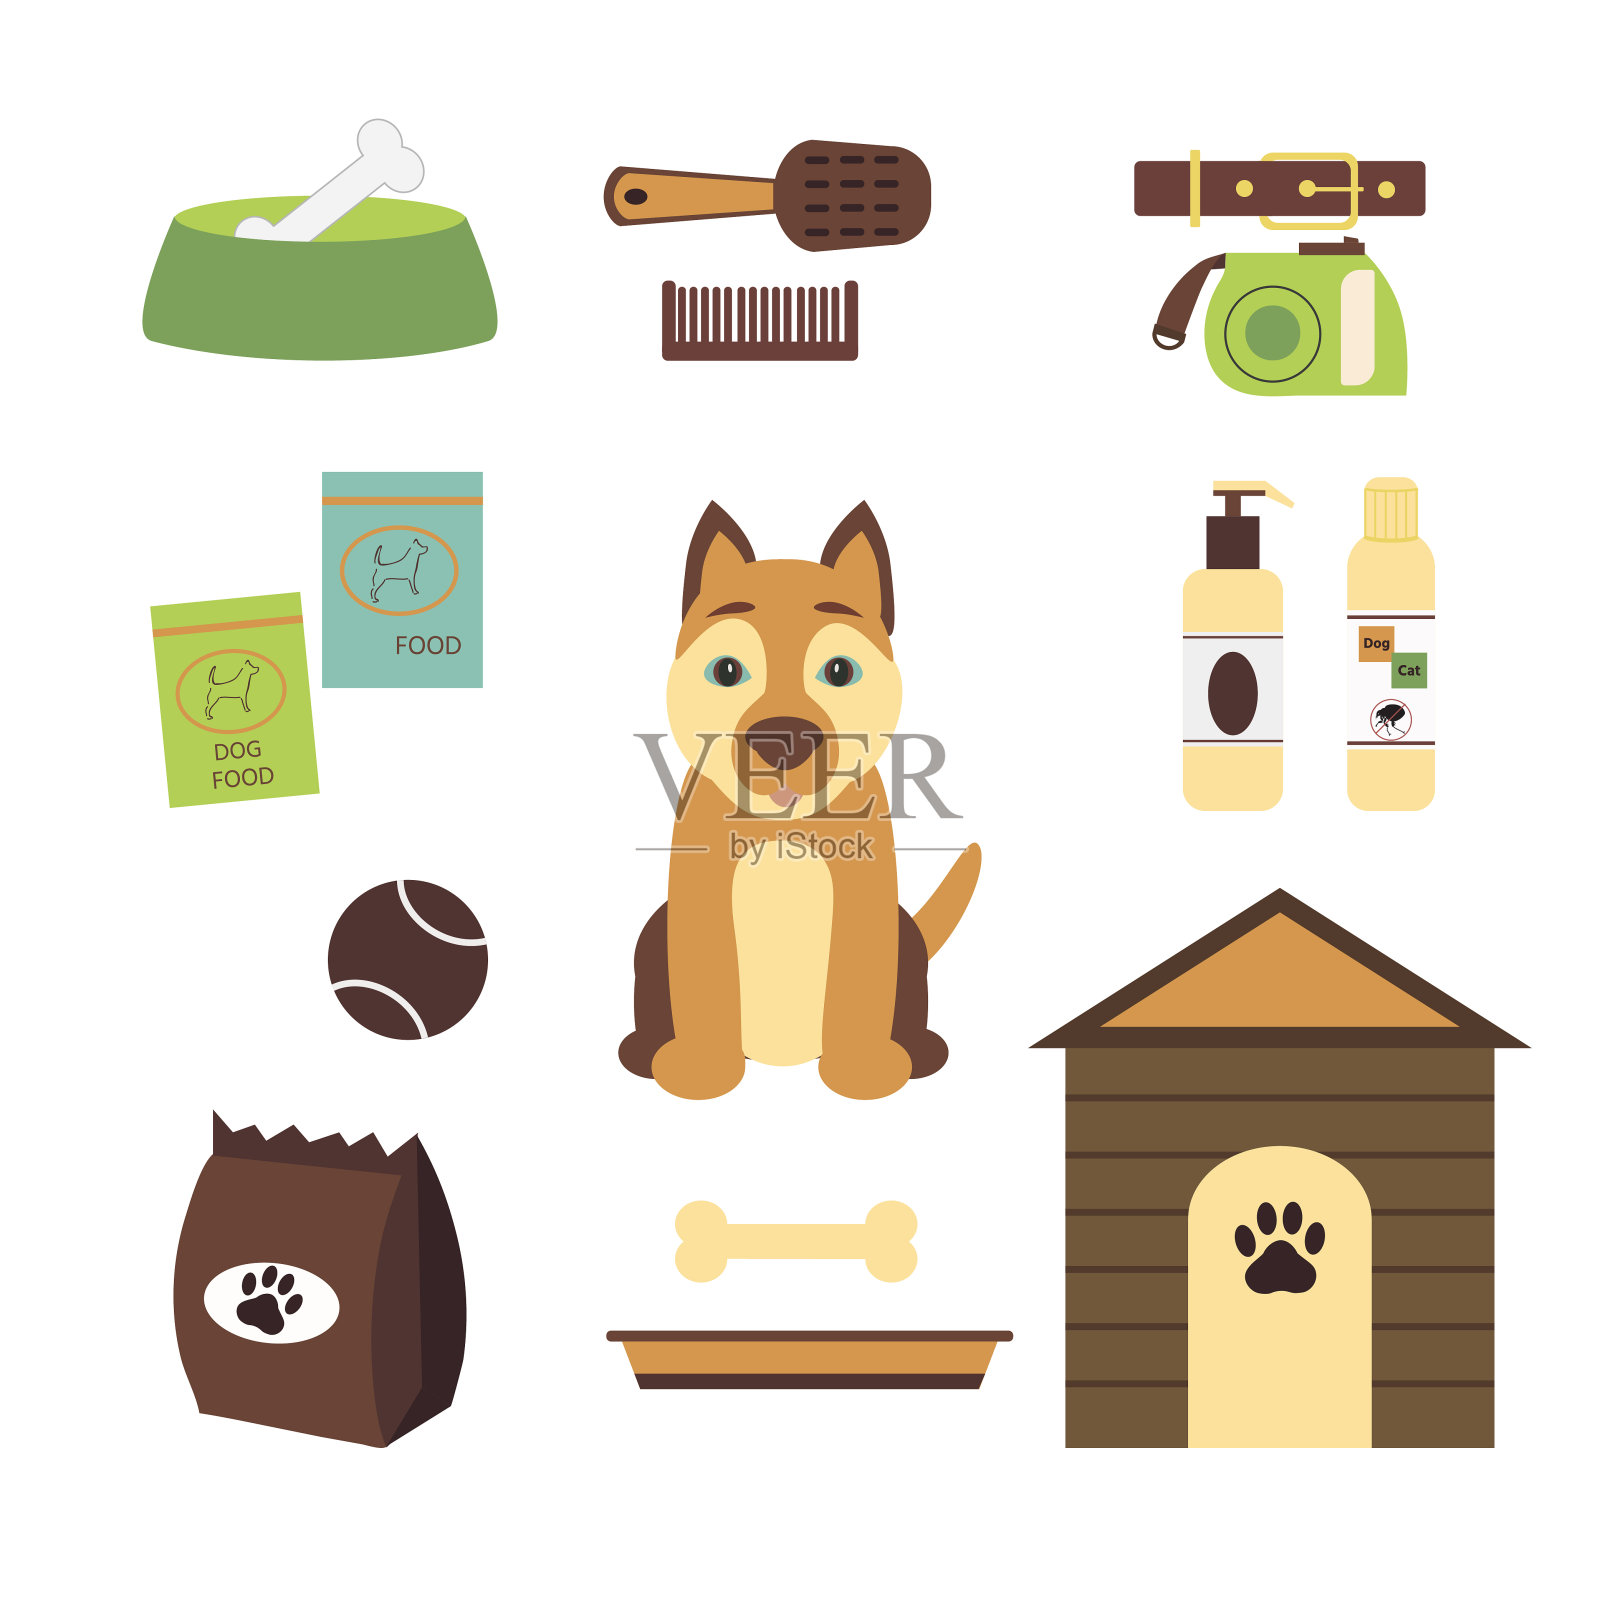 各种宠物用品(食品、洗发水、碗、玩具、球)，一套。插画图片素材